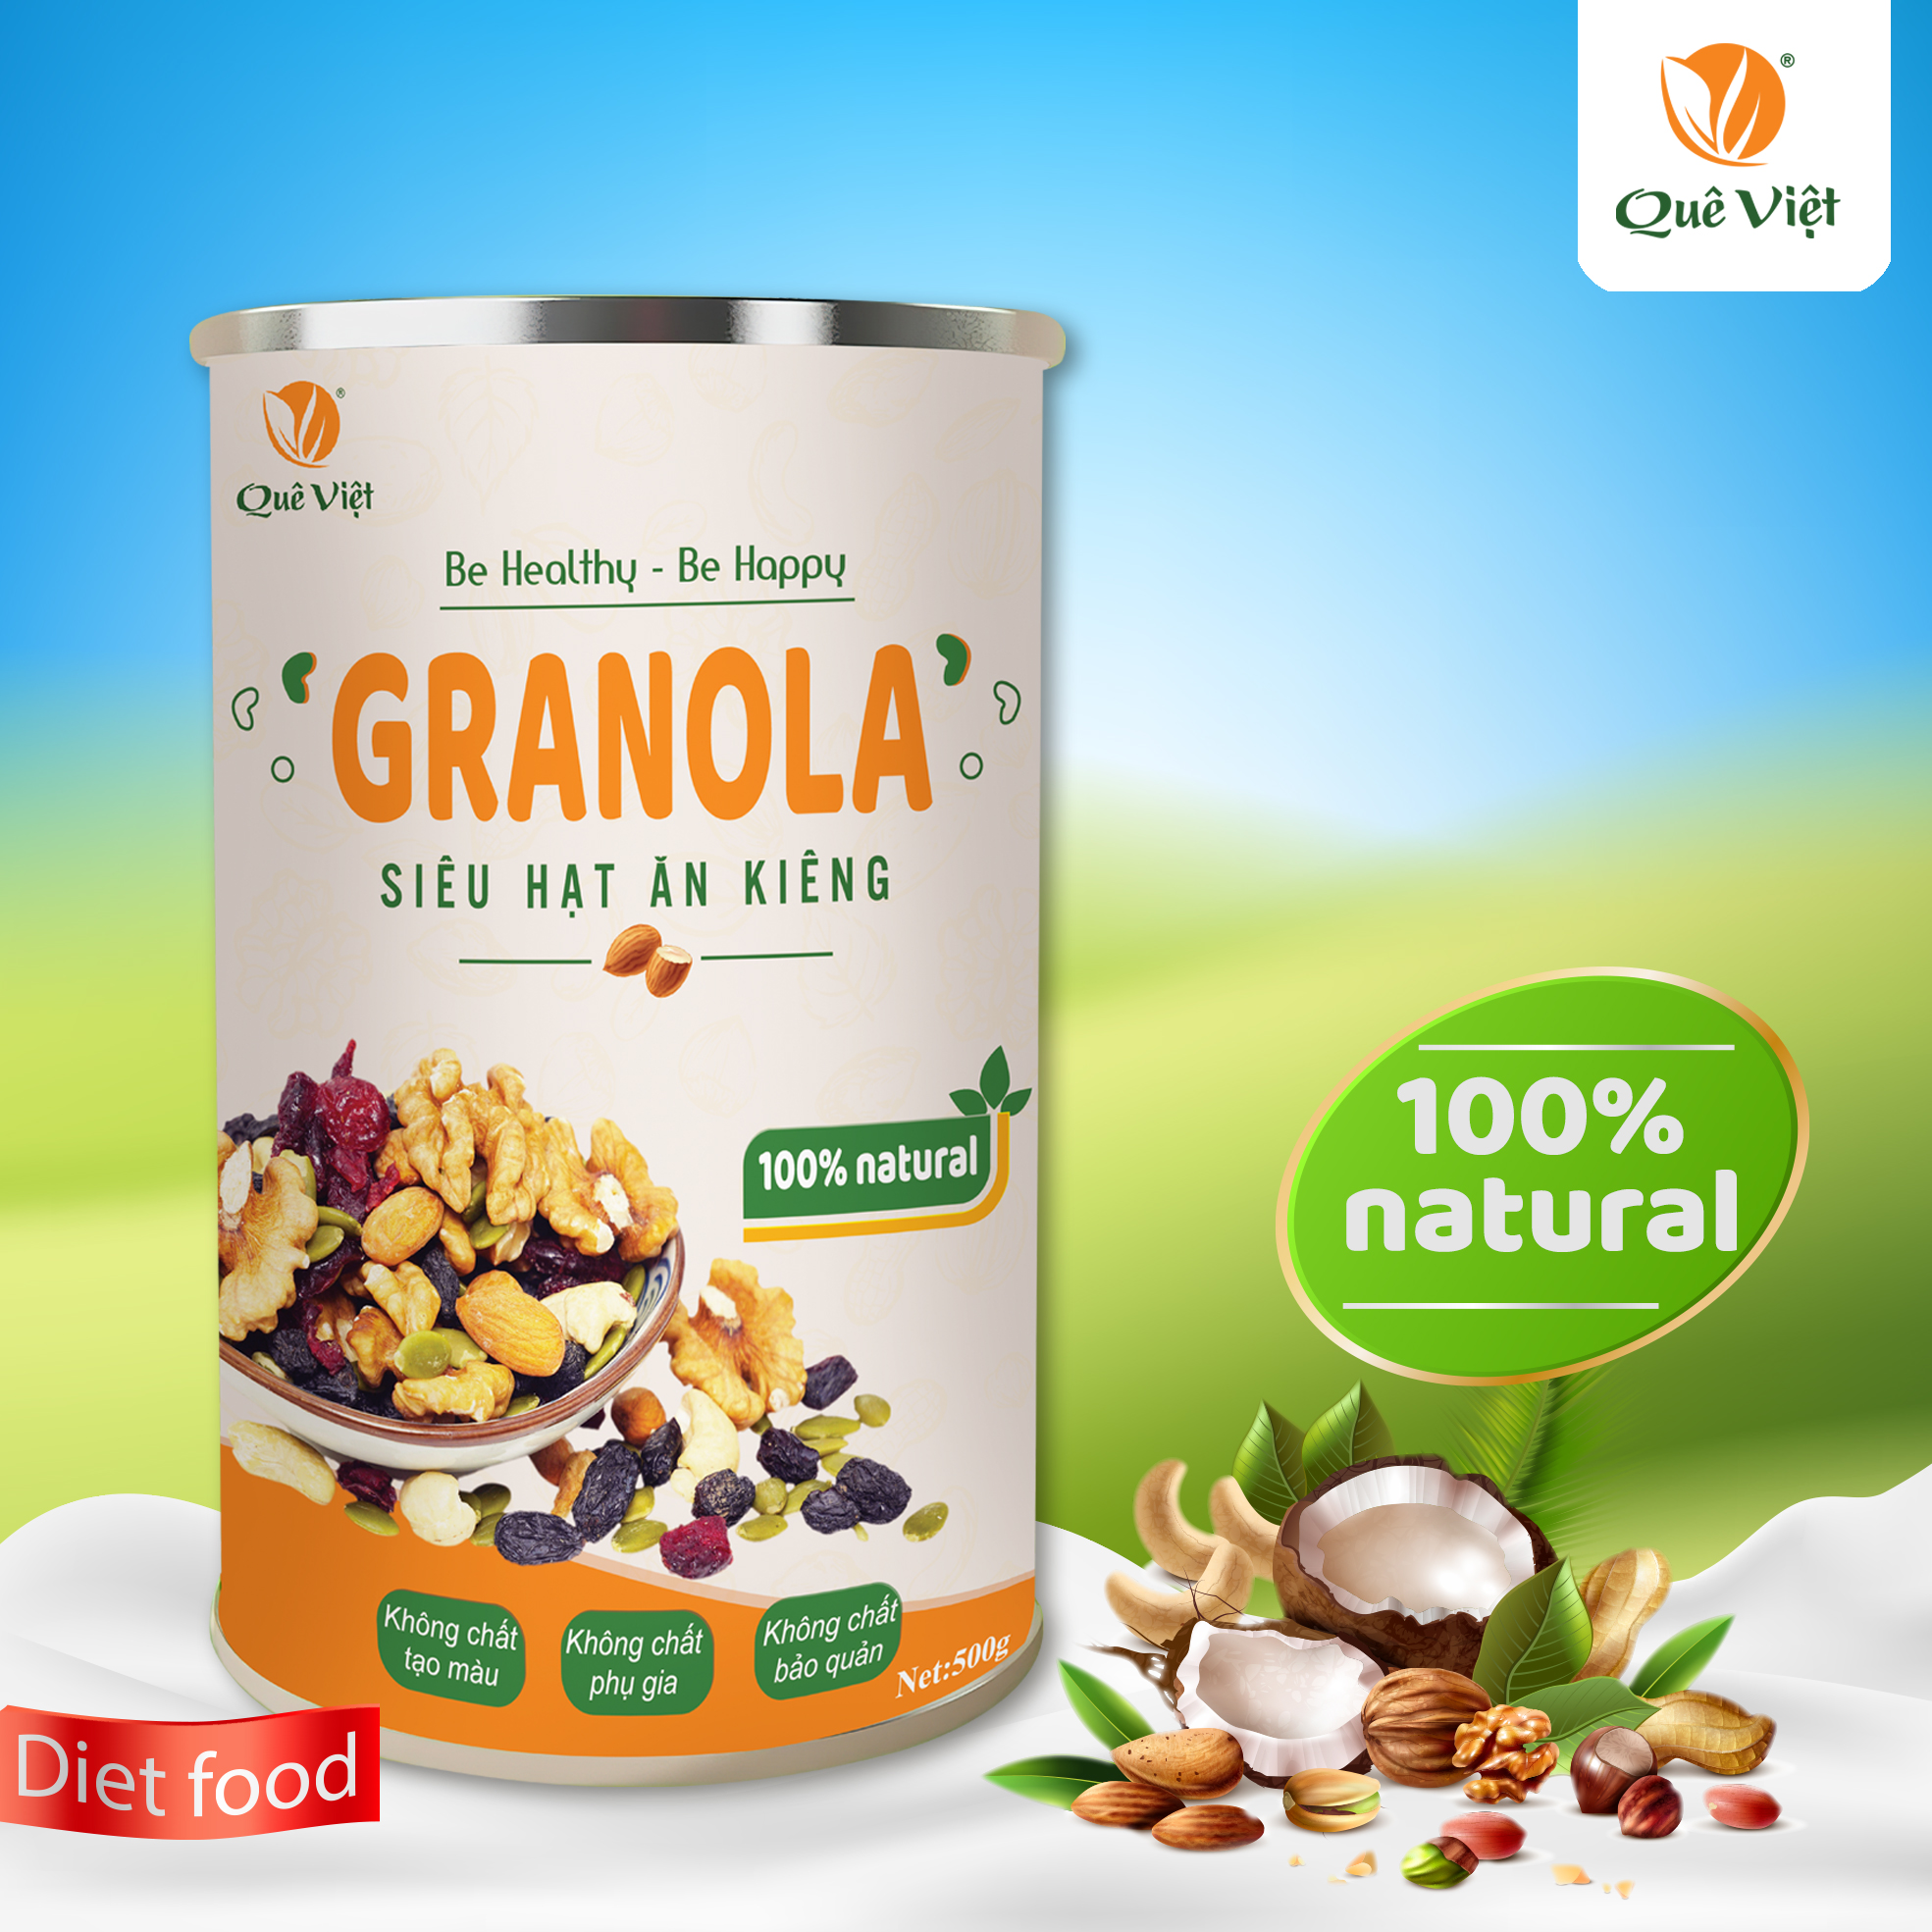 Combo 2 hộp Granola ngũ cốc siêu hạt Quê Việt + tặng 1 cốc gốm sứ bát tràng (500g/hộp)